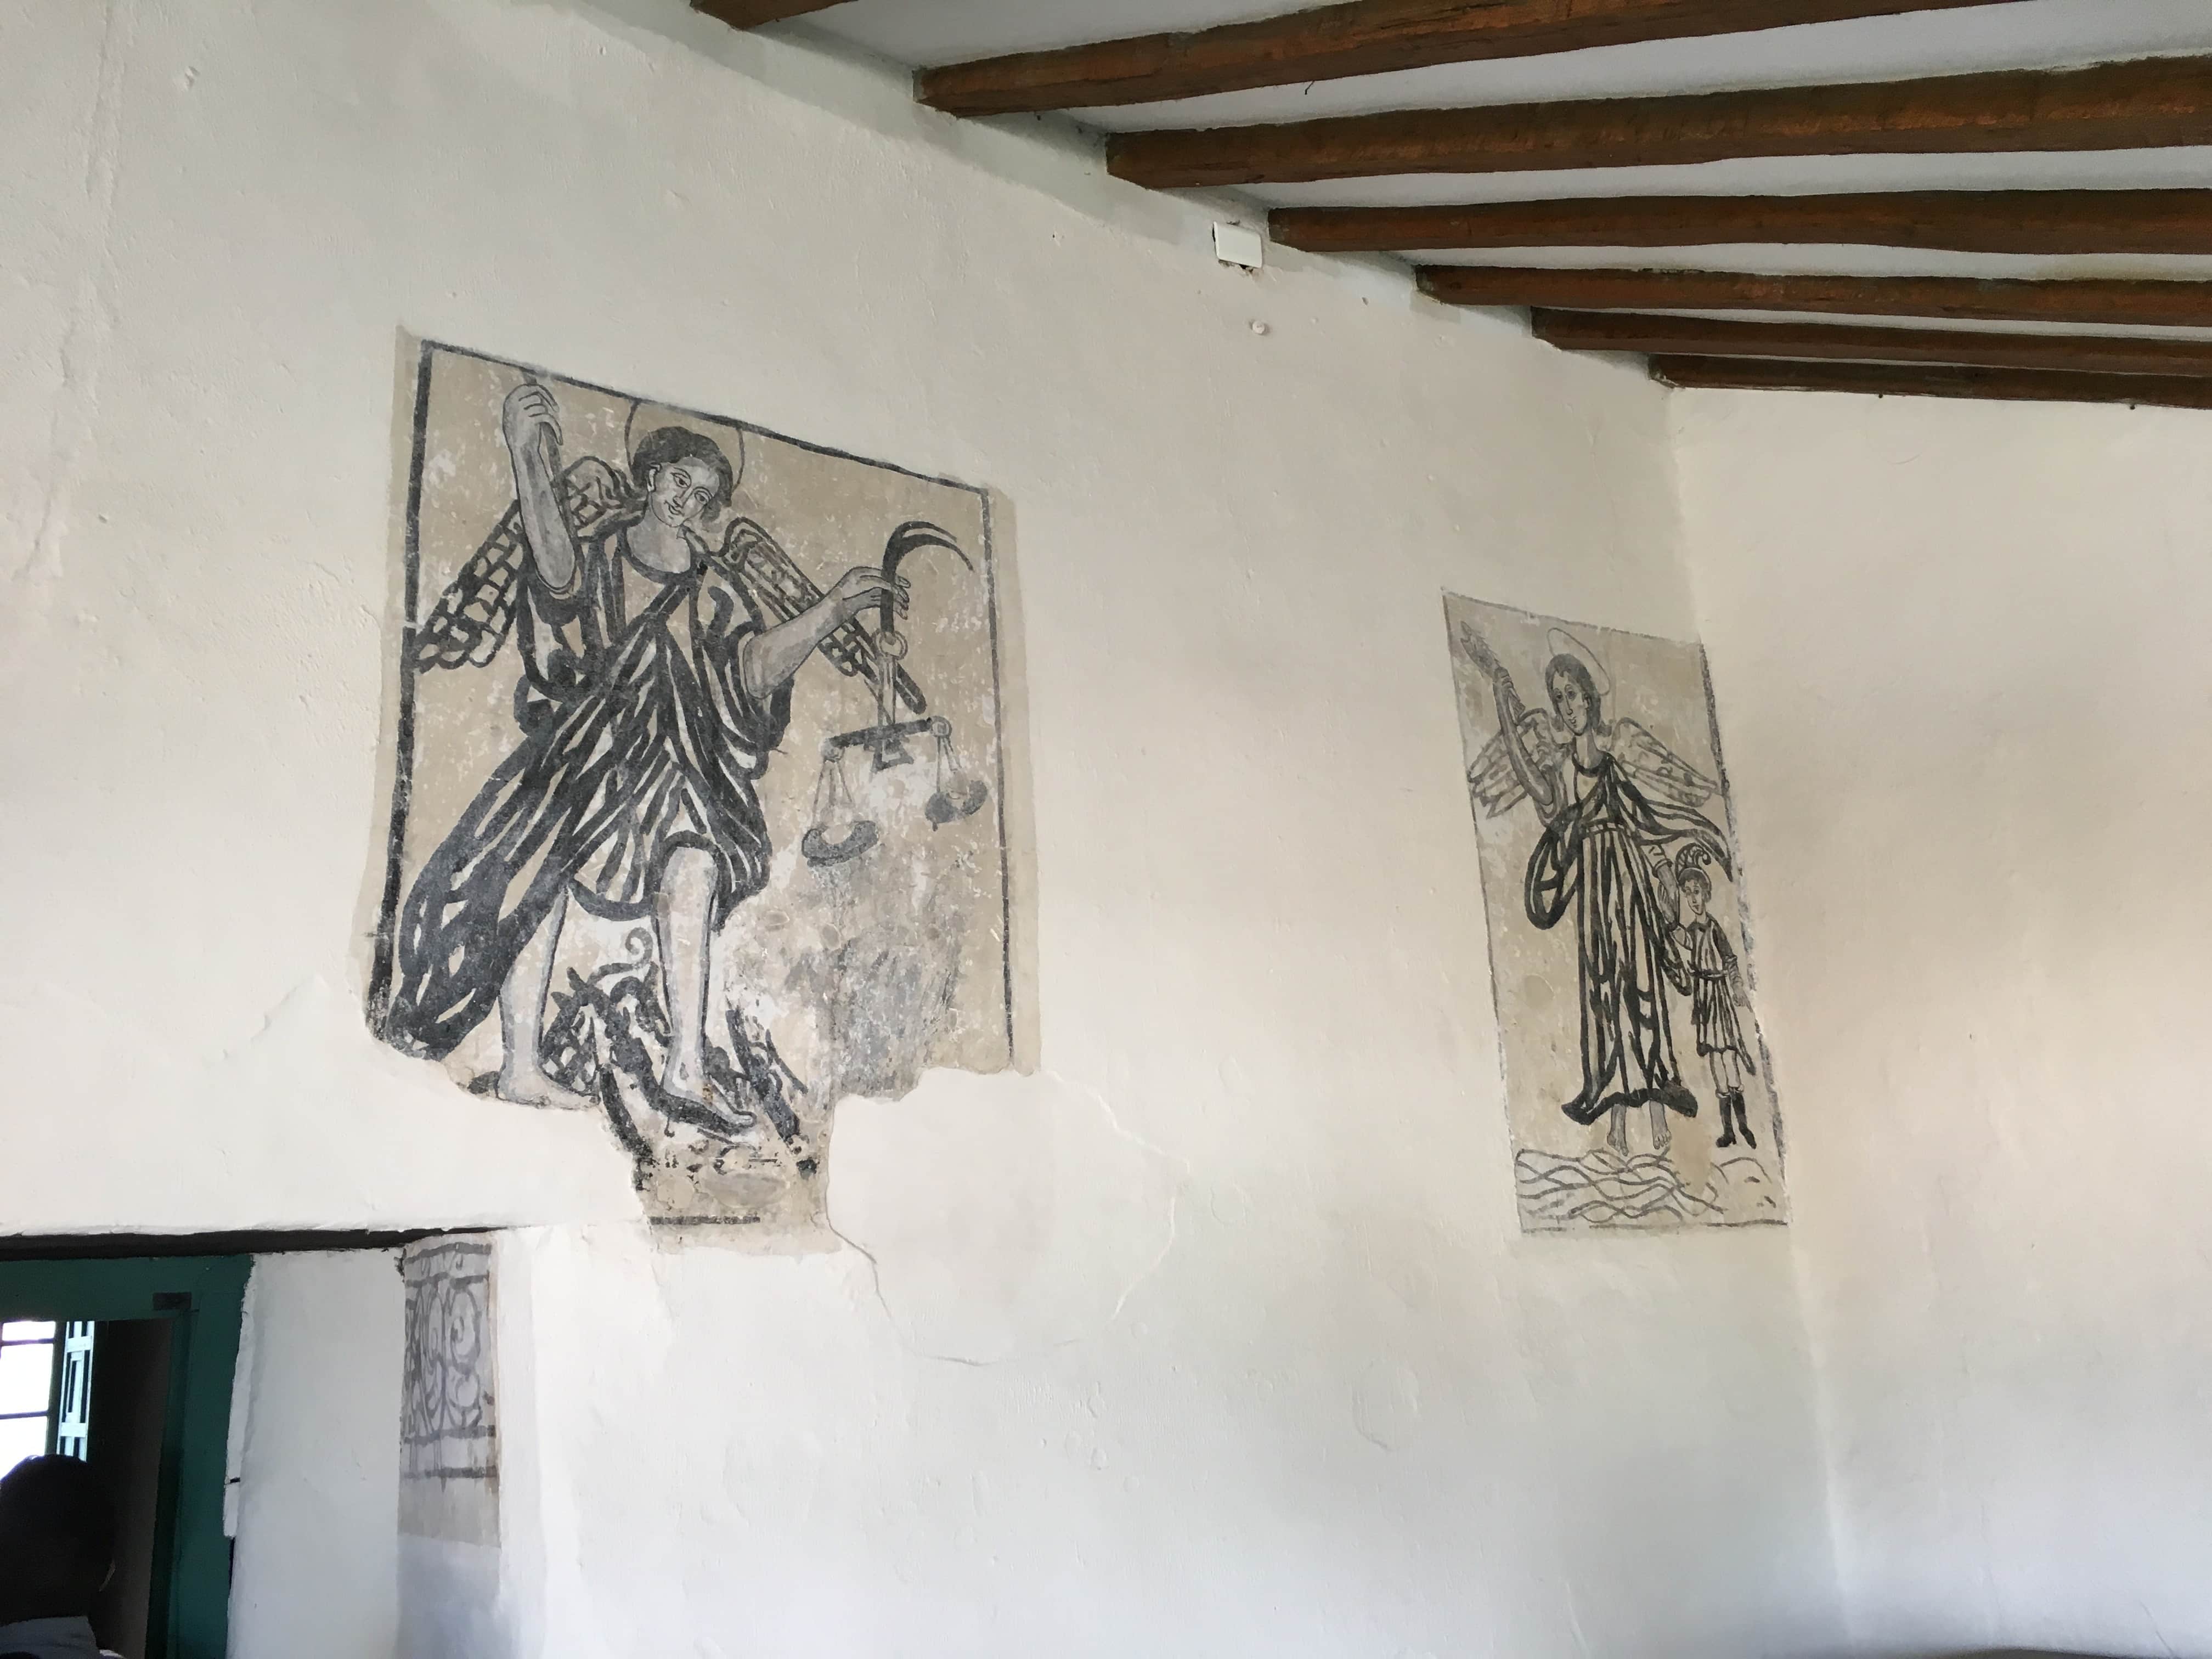 Frescoes on the outer wall of Casa de Don Juan de Vargas in Tunja, Boyacá, Colombia